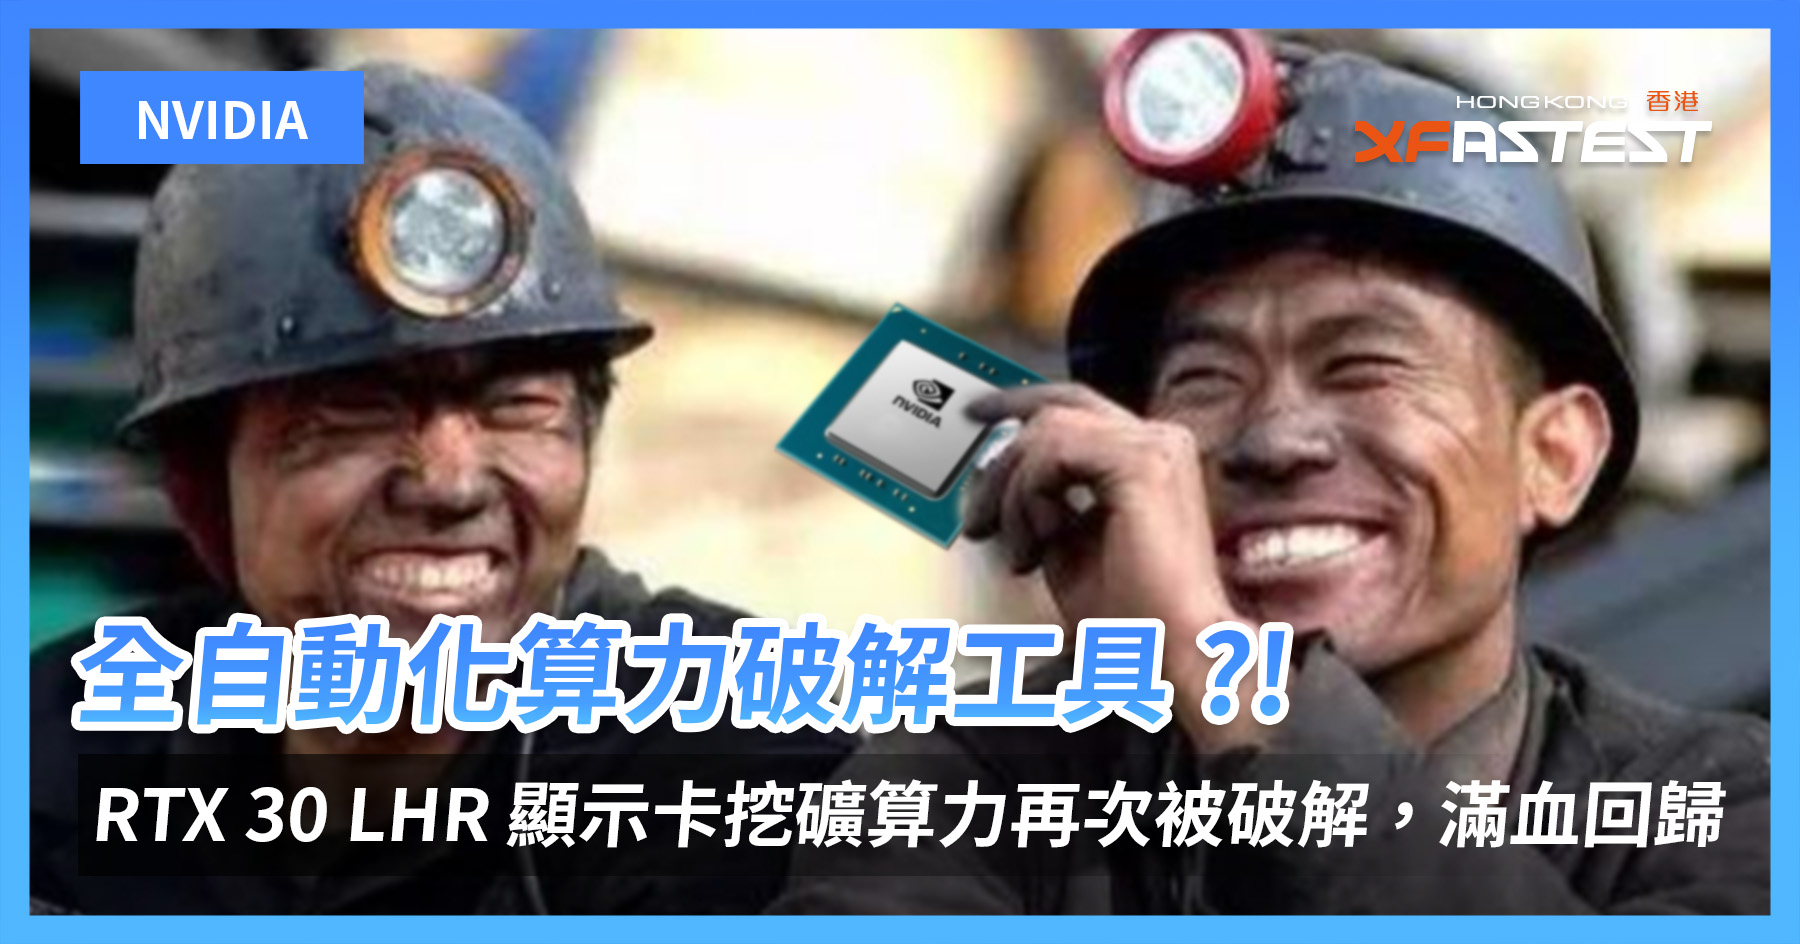 全自動化算力破解工具 ?! NVIDIA RTX 30 LHR 顯示卡挖礦算力再次被破解，滿血回歸 - XFastest Hong Kong